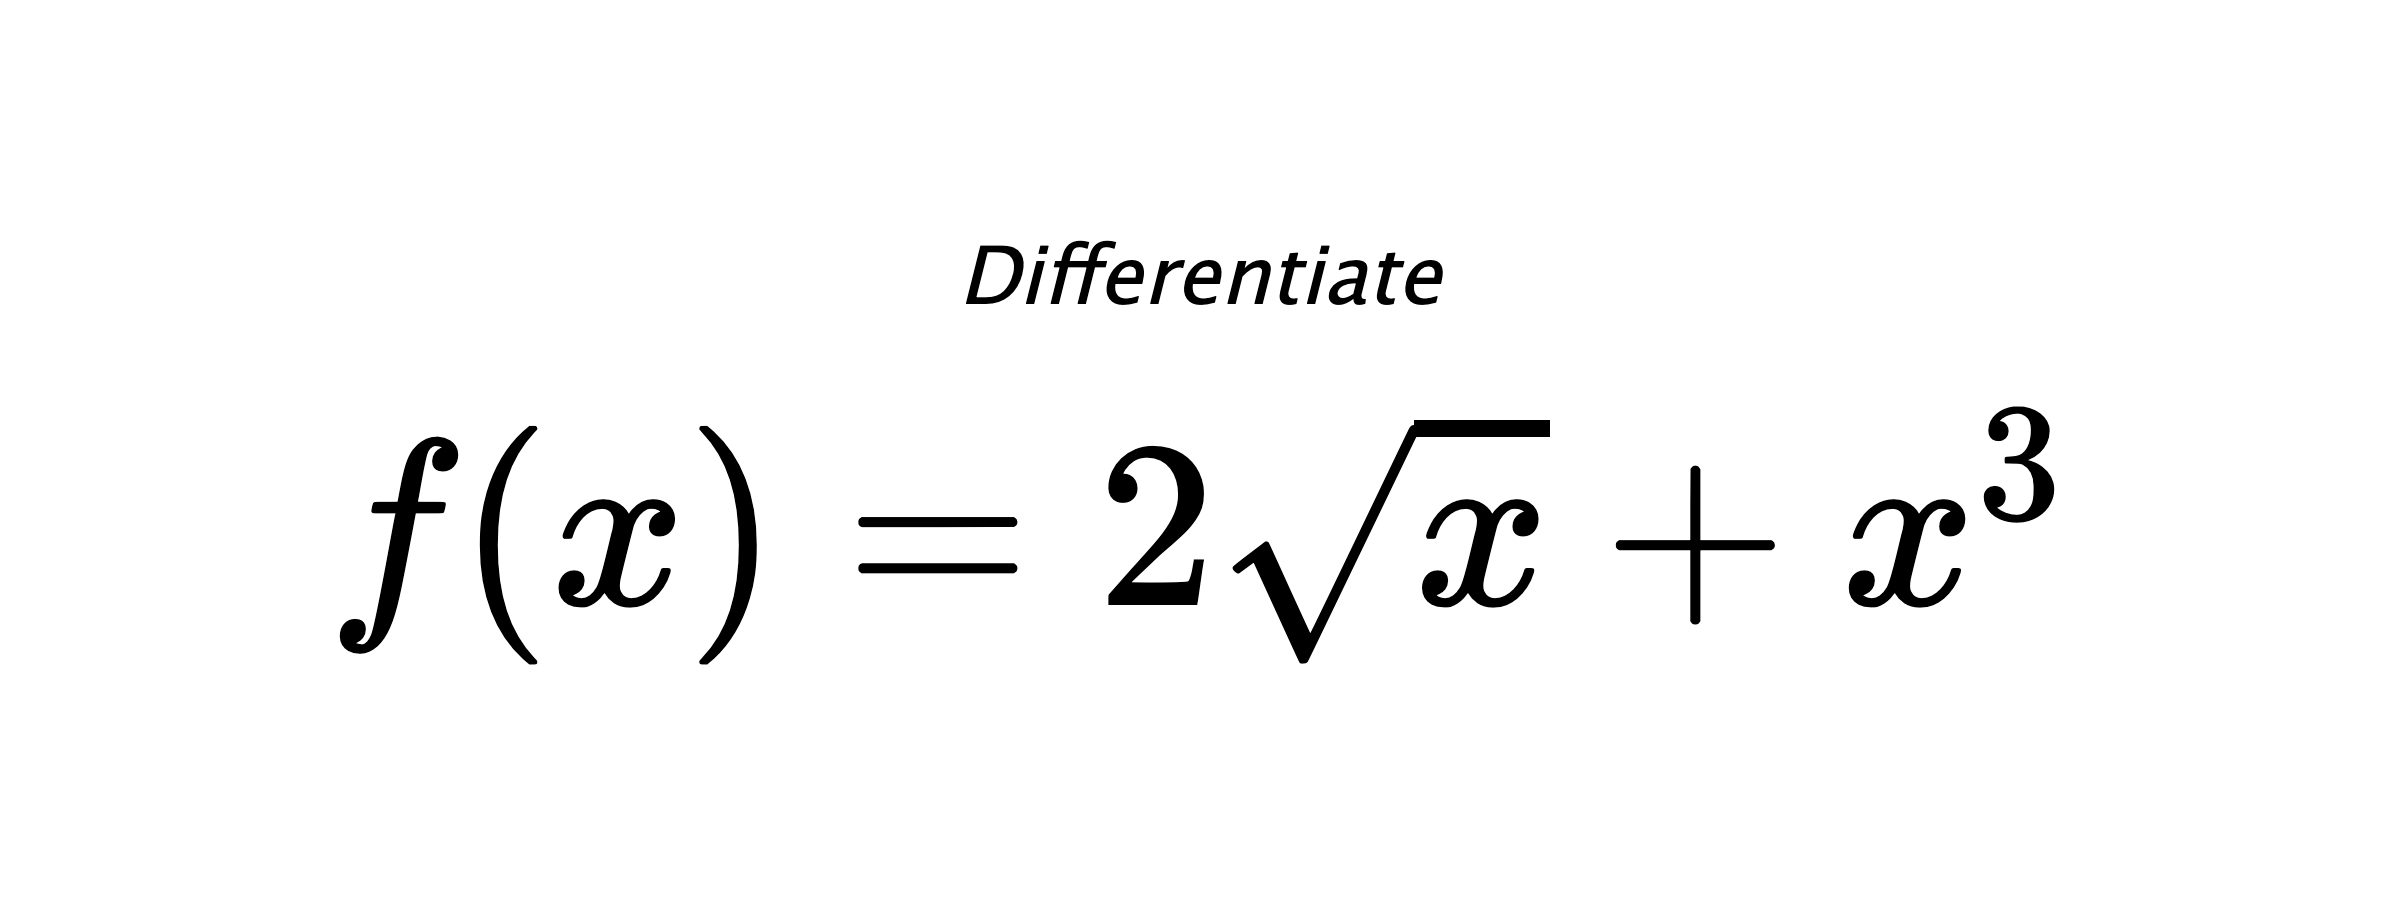 Differentiate $ f(x) = 2 \sqrt{x} + x^{3} $